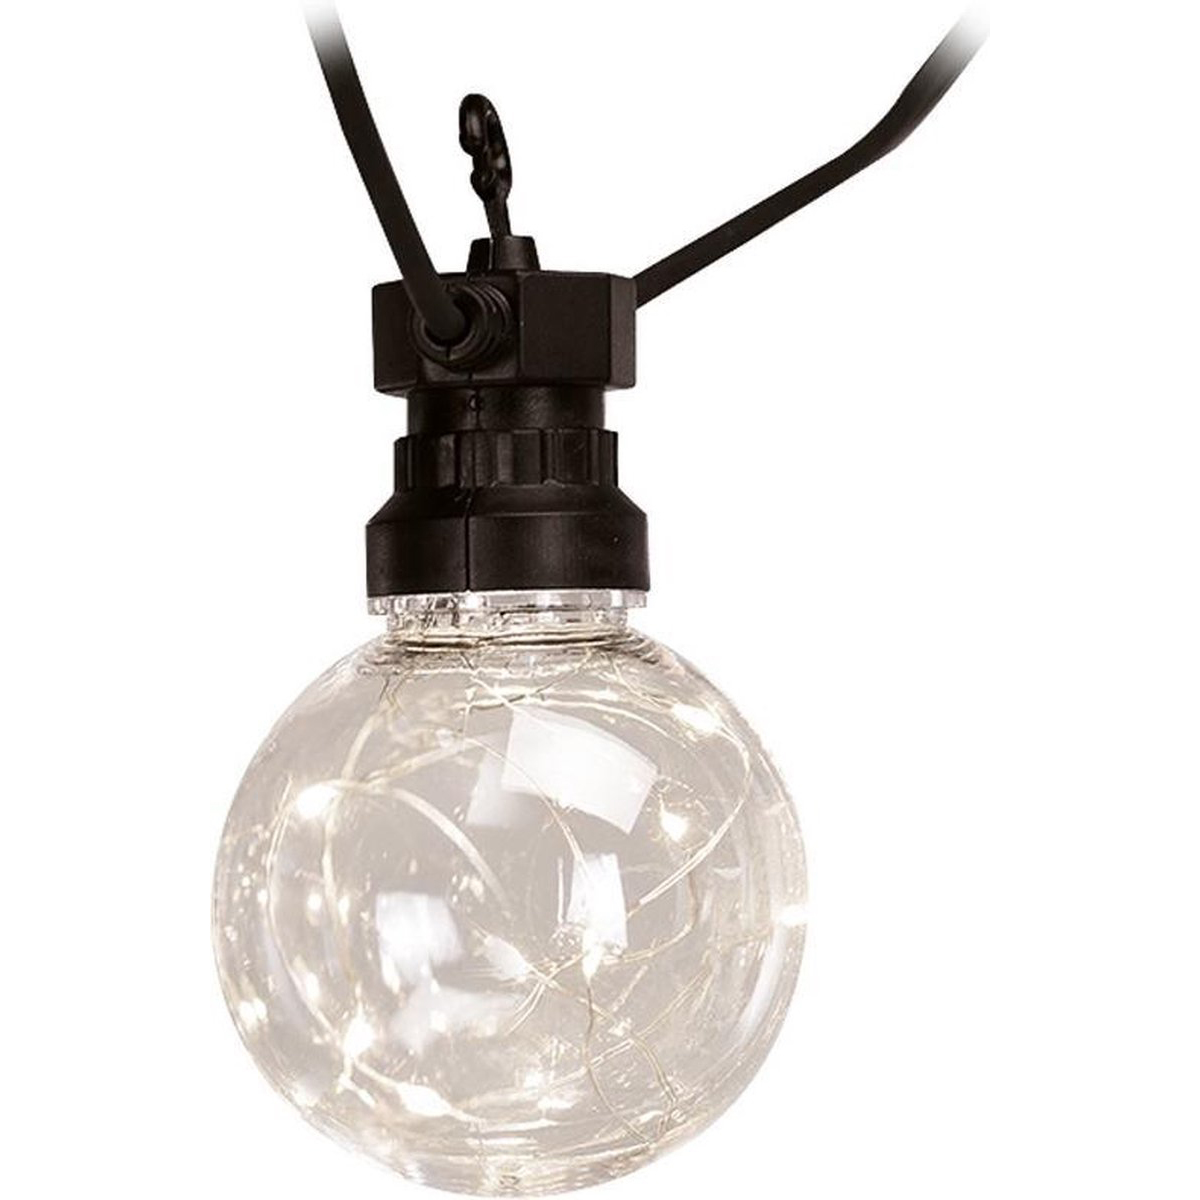 Lichtsnoer 2 x 7.5 m - 2 x 10 Lampjes - Binnen/Buiten Verlichting - Feestverlichting 50Led - Warm Wit